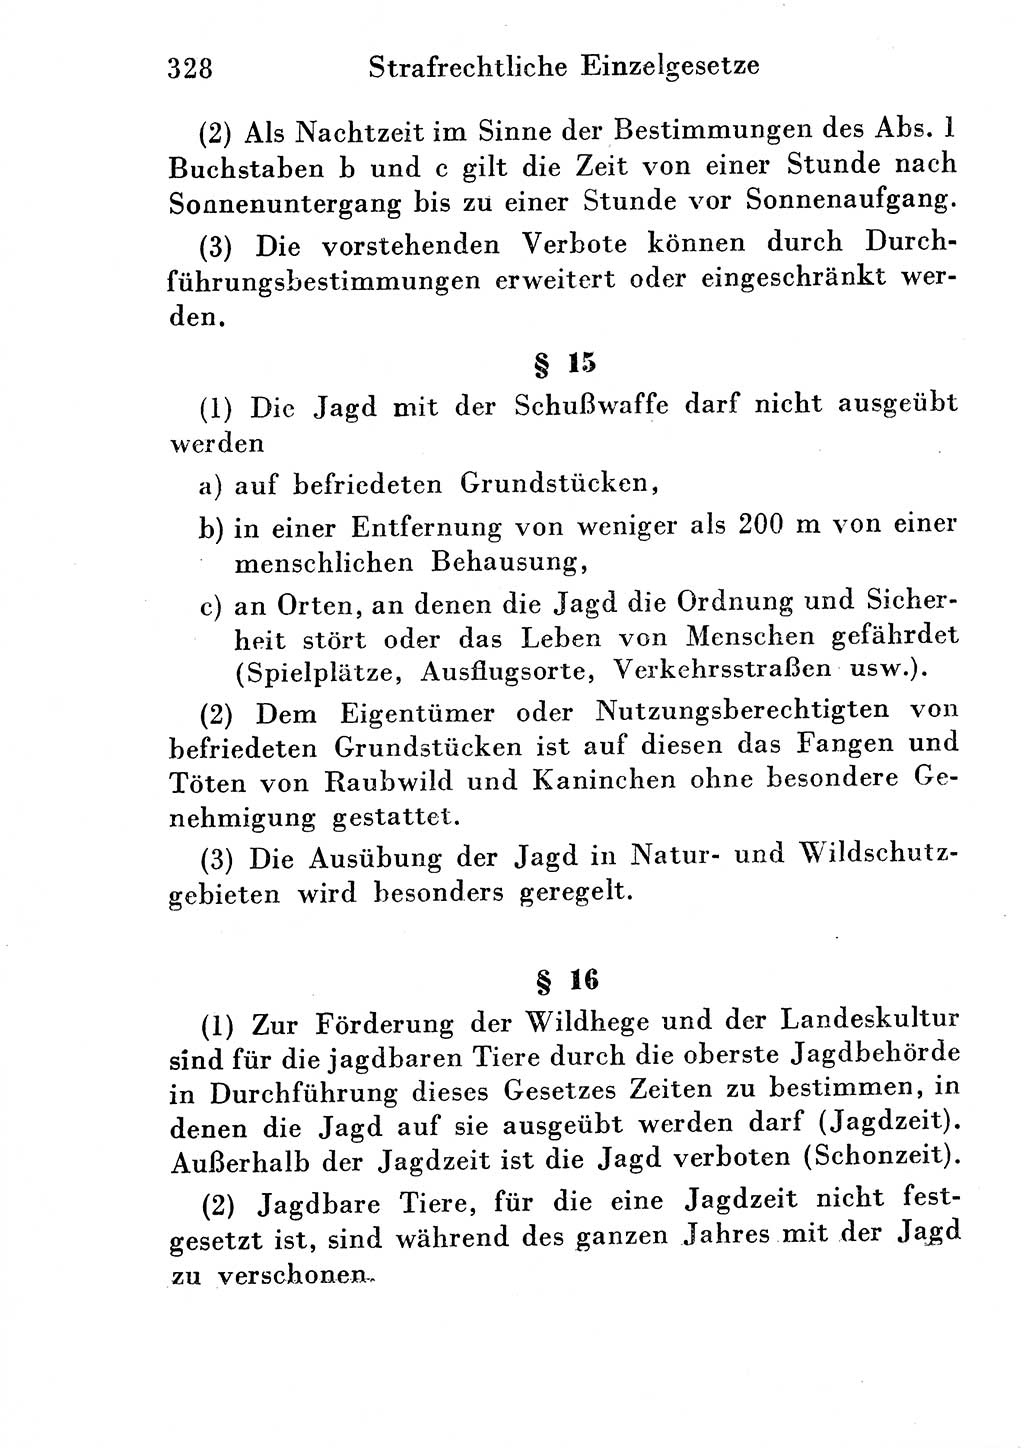 Strafgesetzbuch (StGB) und andere Strafgesetze [Deutsche Demokratische Republik (DDR)] 1954, Seite 328 (StGB Strafges. DDR 1954, S. 328)